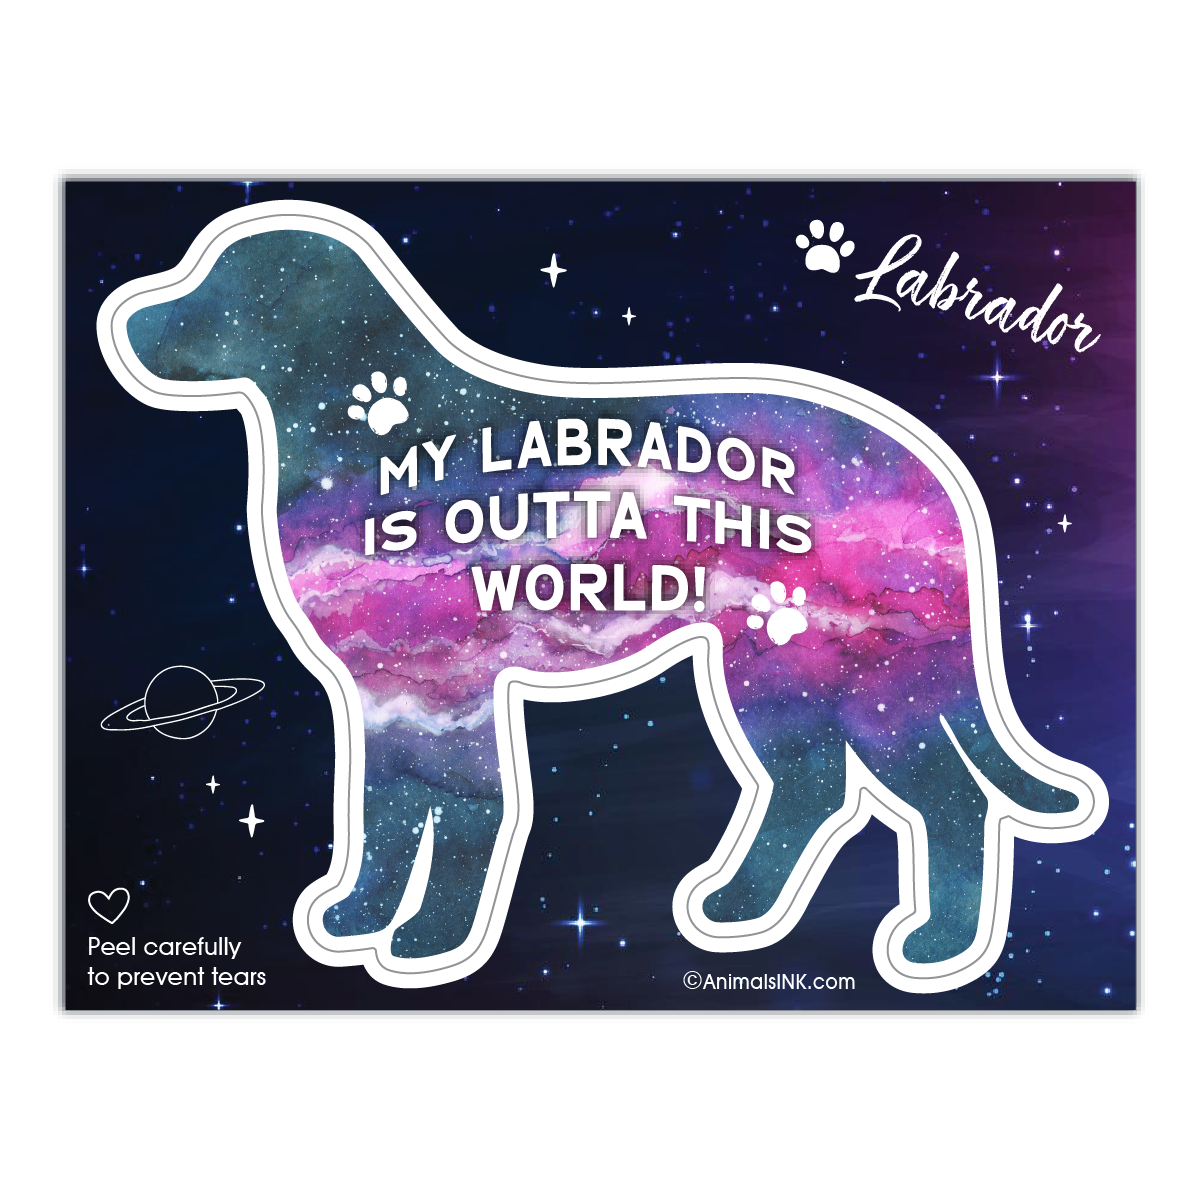 Labrador thumbnail